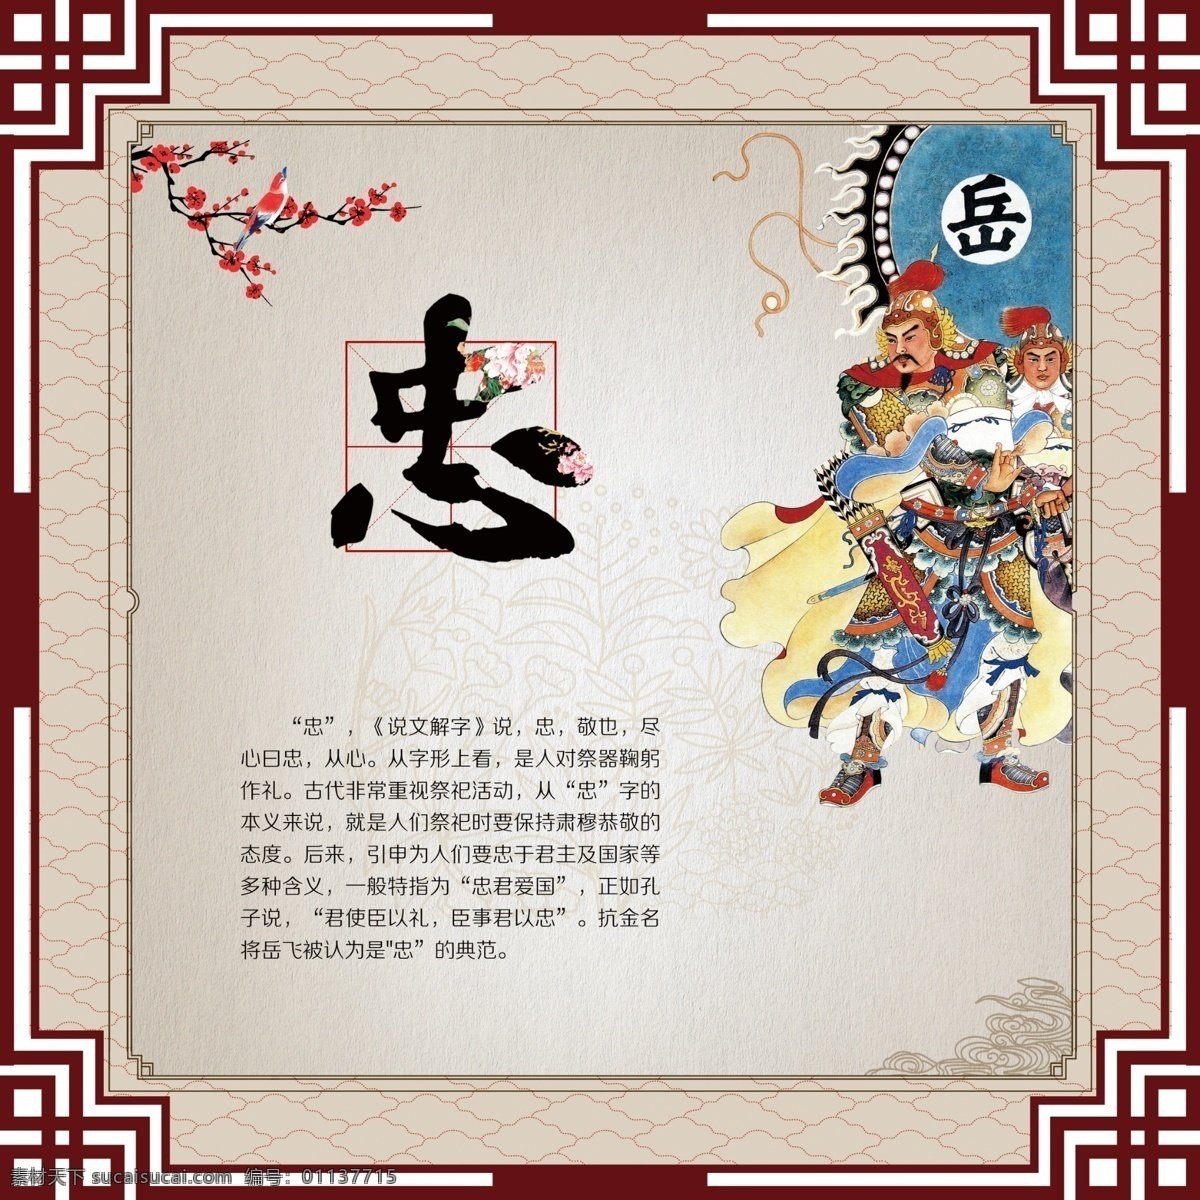 企业文化 社区文化 忠 传统文化 中国风 走廊文化 文化艺术